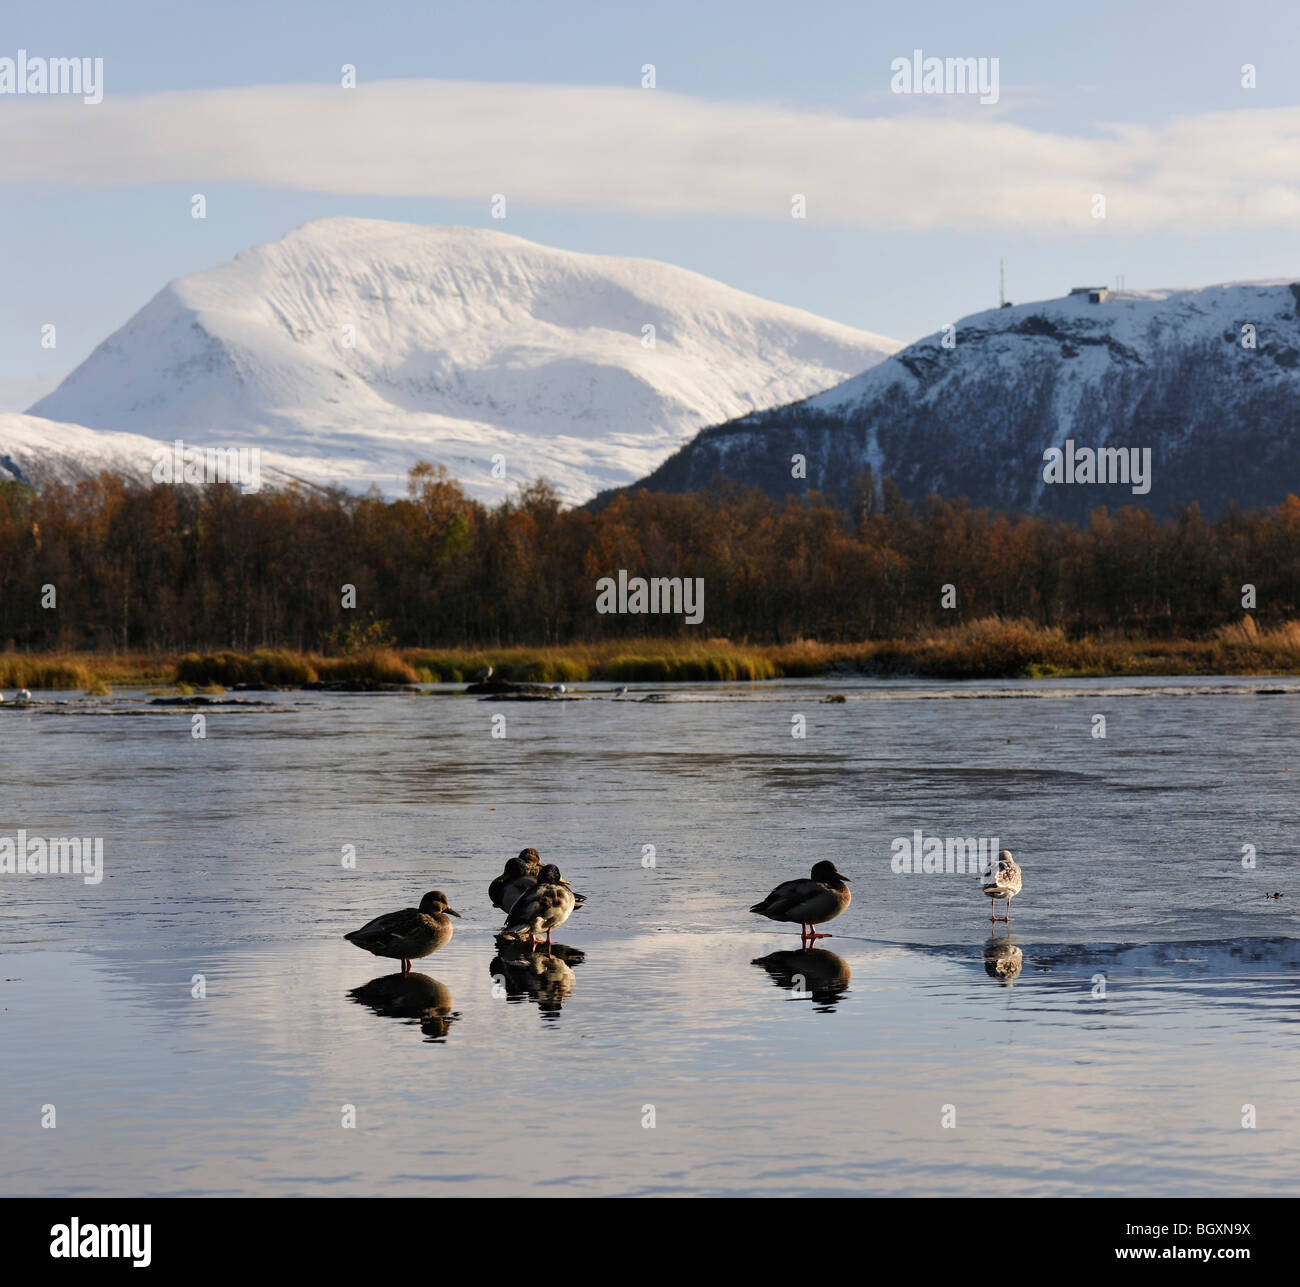 Mallard Enten und ein Seagullon eine dünne Oberfläche von Eis auf einem See. Reflexionen, Spiegelungen, der Vögel. Tromsø, Nordnorwegen. Stockfoto